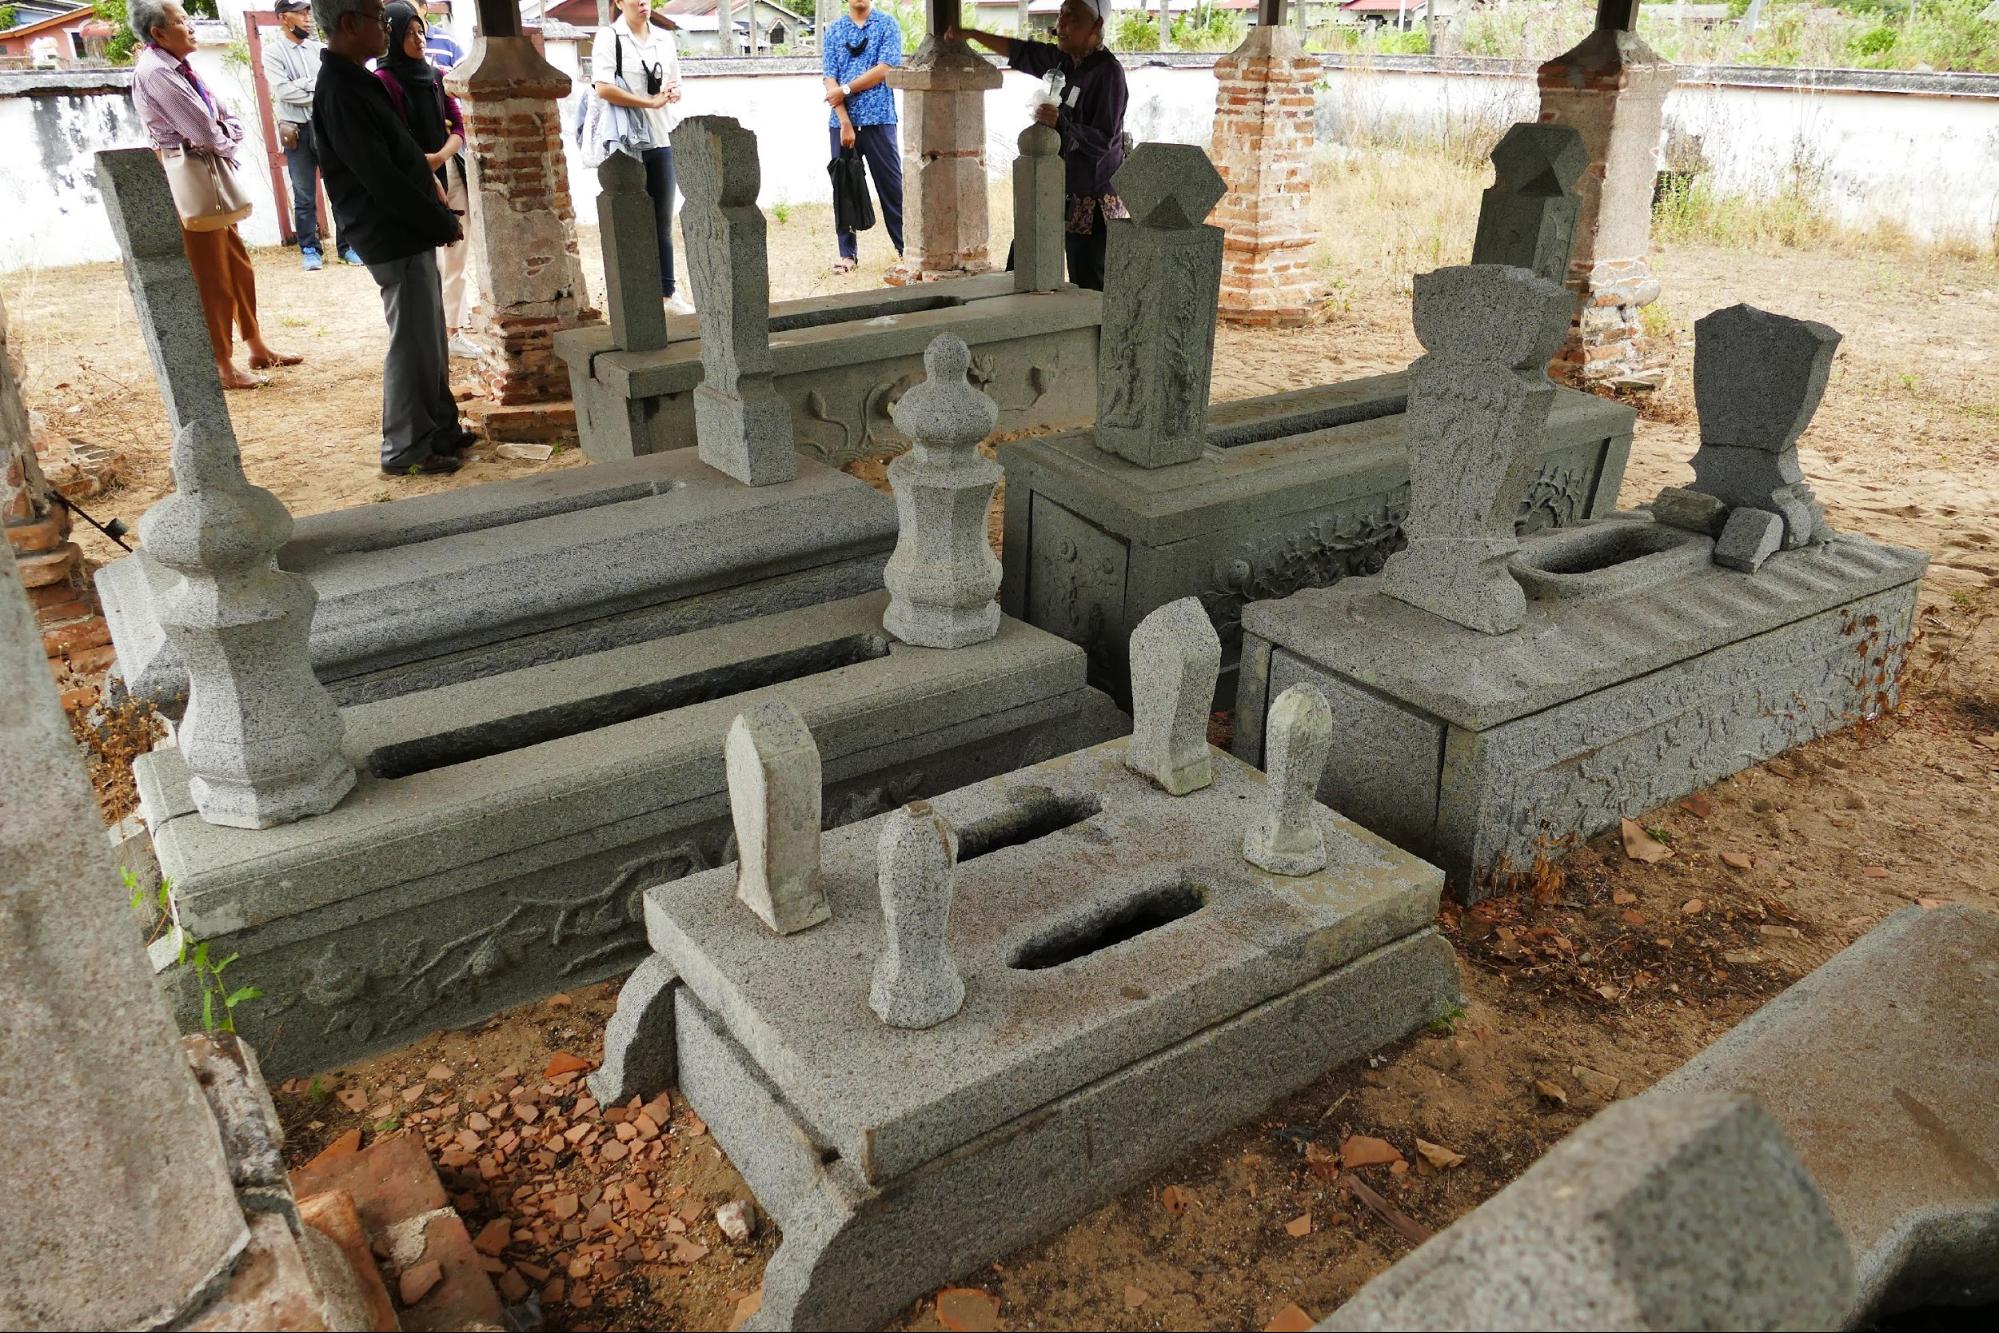 โลงศพหินของตระกูลตนกูปะสา เจ้าเมืองปัตตานีในสมัยภายใต้การปกครองของสยามสมัยรัชกาลที่ 3